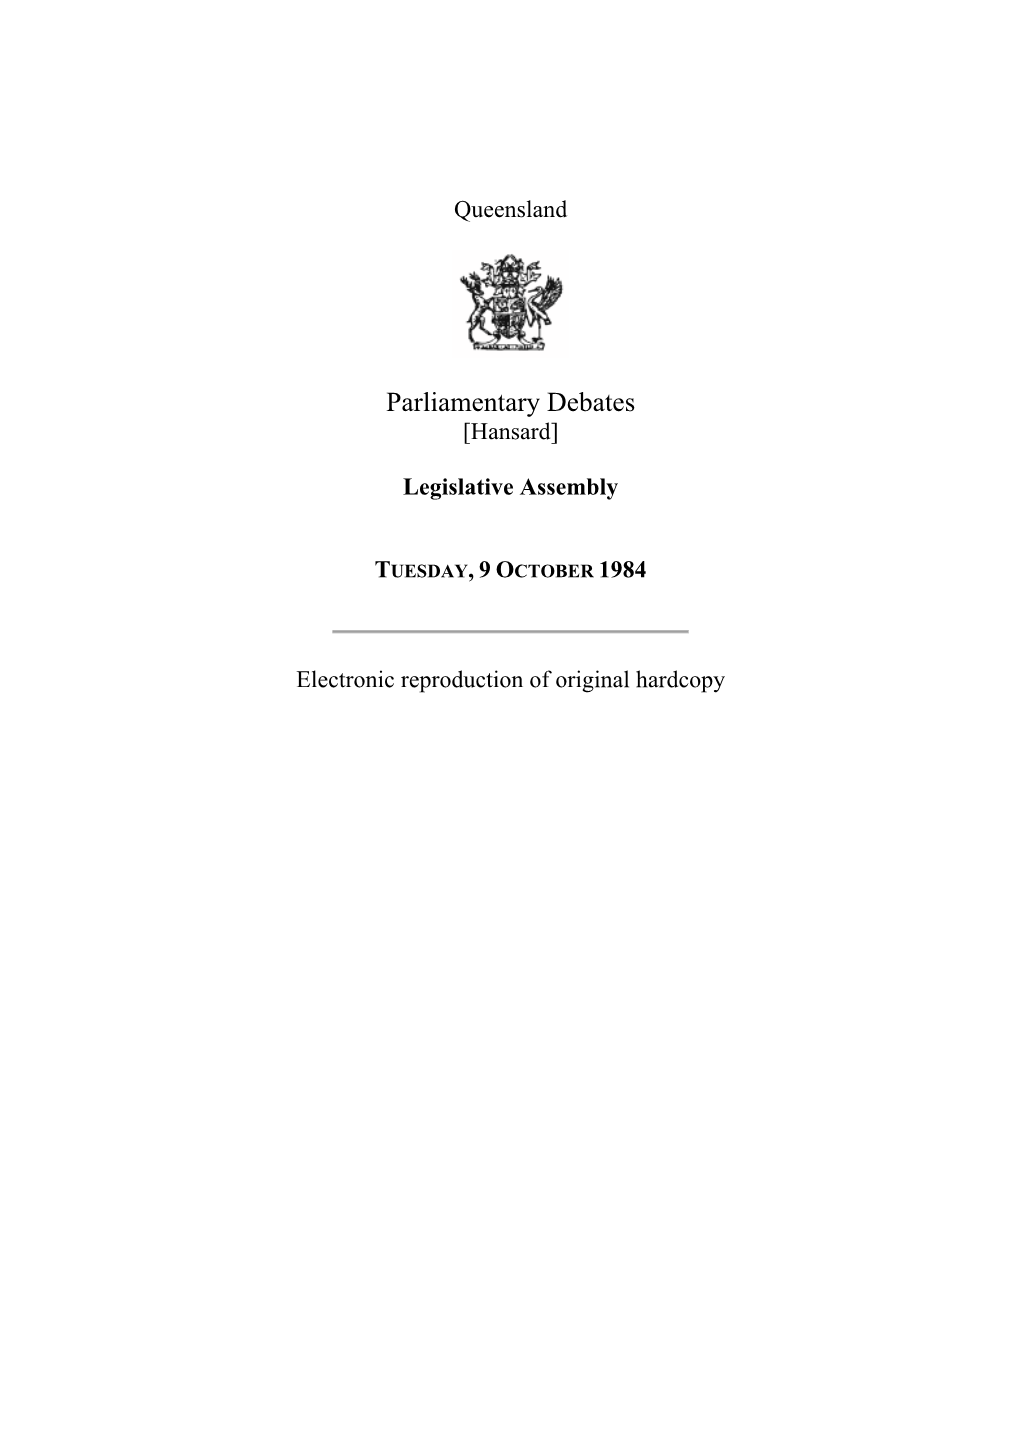 Legislative Assembly Hansard 1984